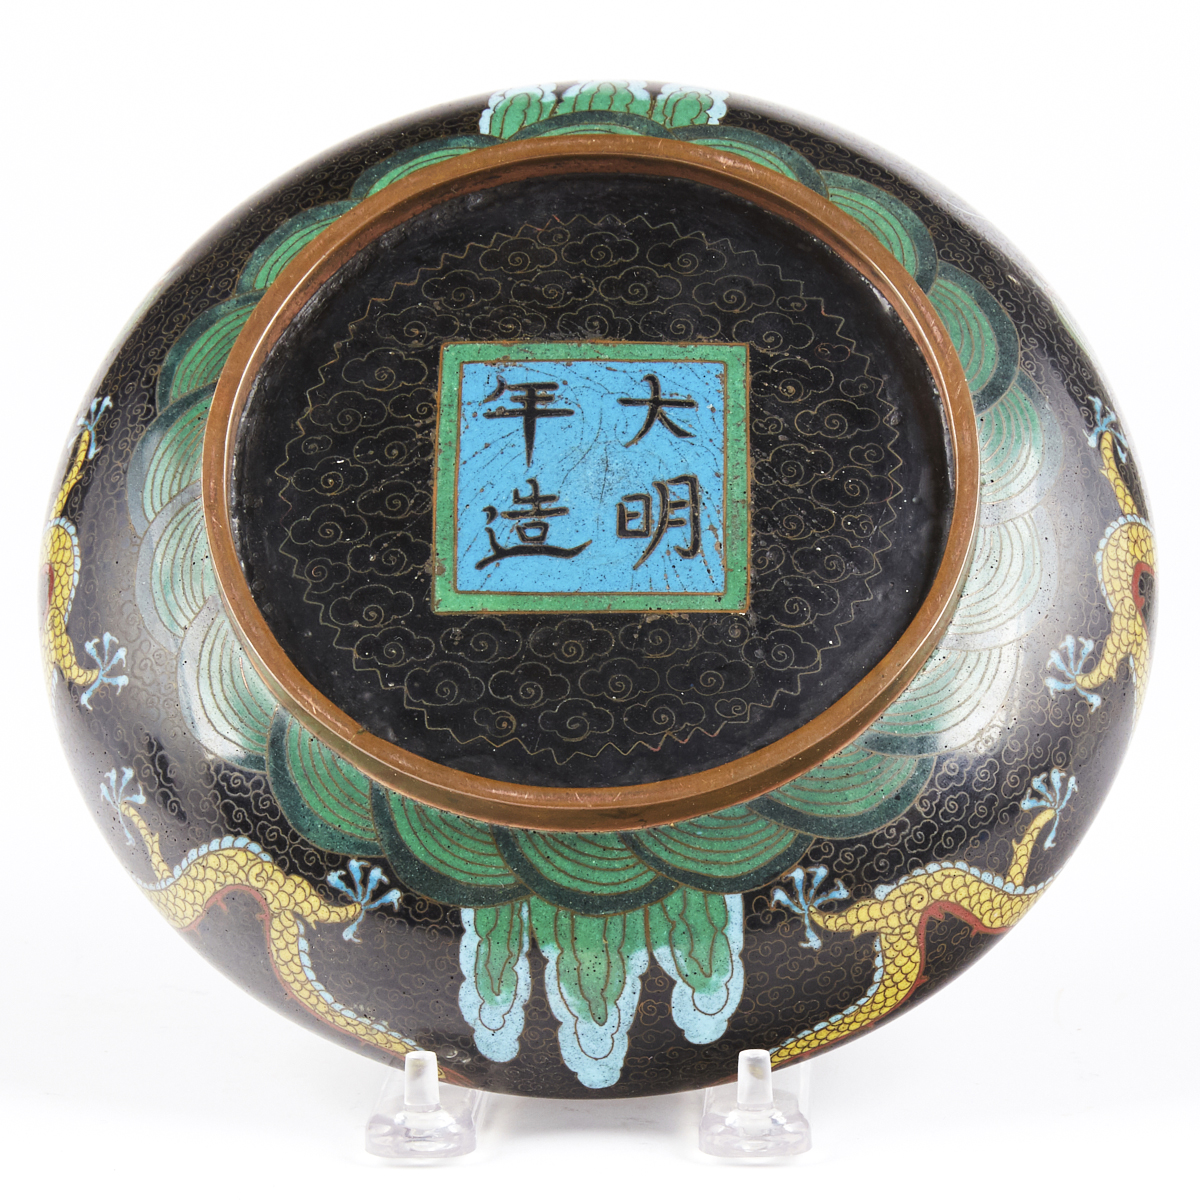 Japanese Cloisonne Metal Dragon Bowl - Image 2 of 4